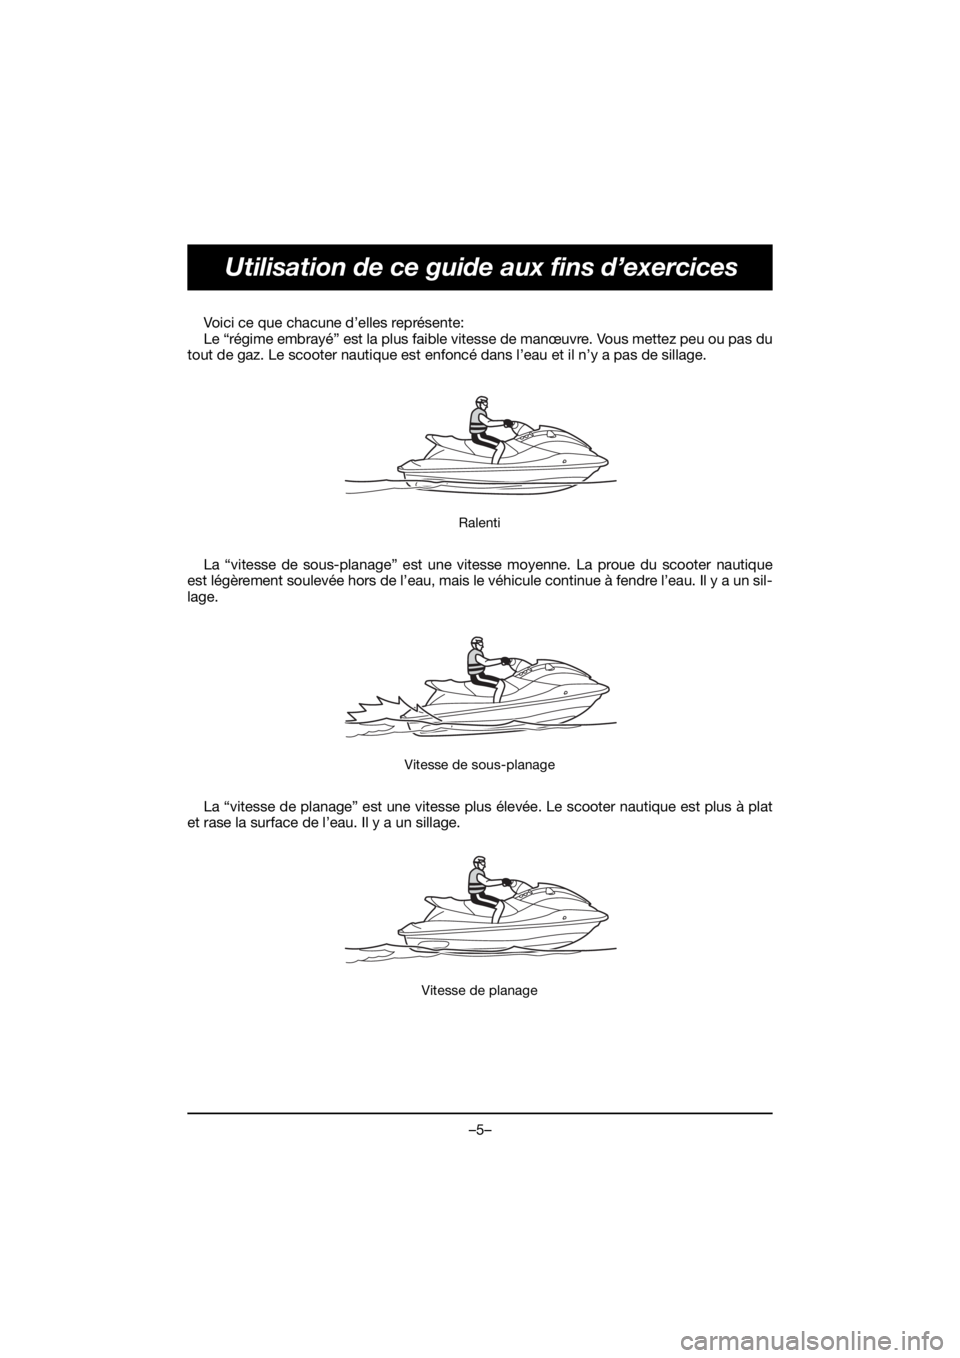 YAMAHA VX DELUXE 2020  Manual de utilização (in Portuguese) –5–
Utilisation de ce guide aux fins d’exercices
Voici ce que chacune d’elles représente: 
Le “régime embrayé” est la plus faible vitesse de manœuvre. Vous mettez peu ou pas du
tout de